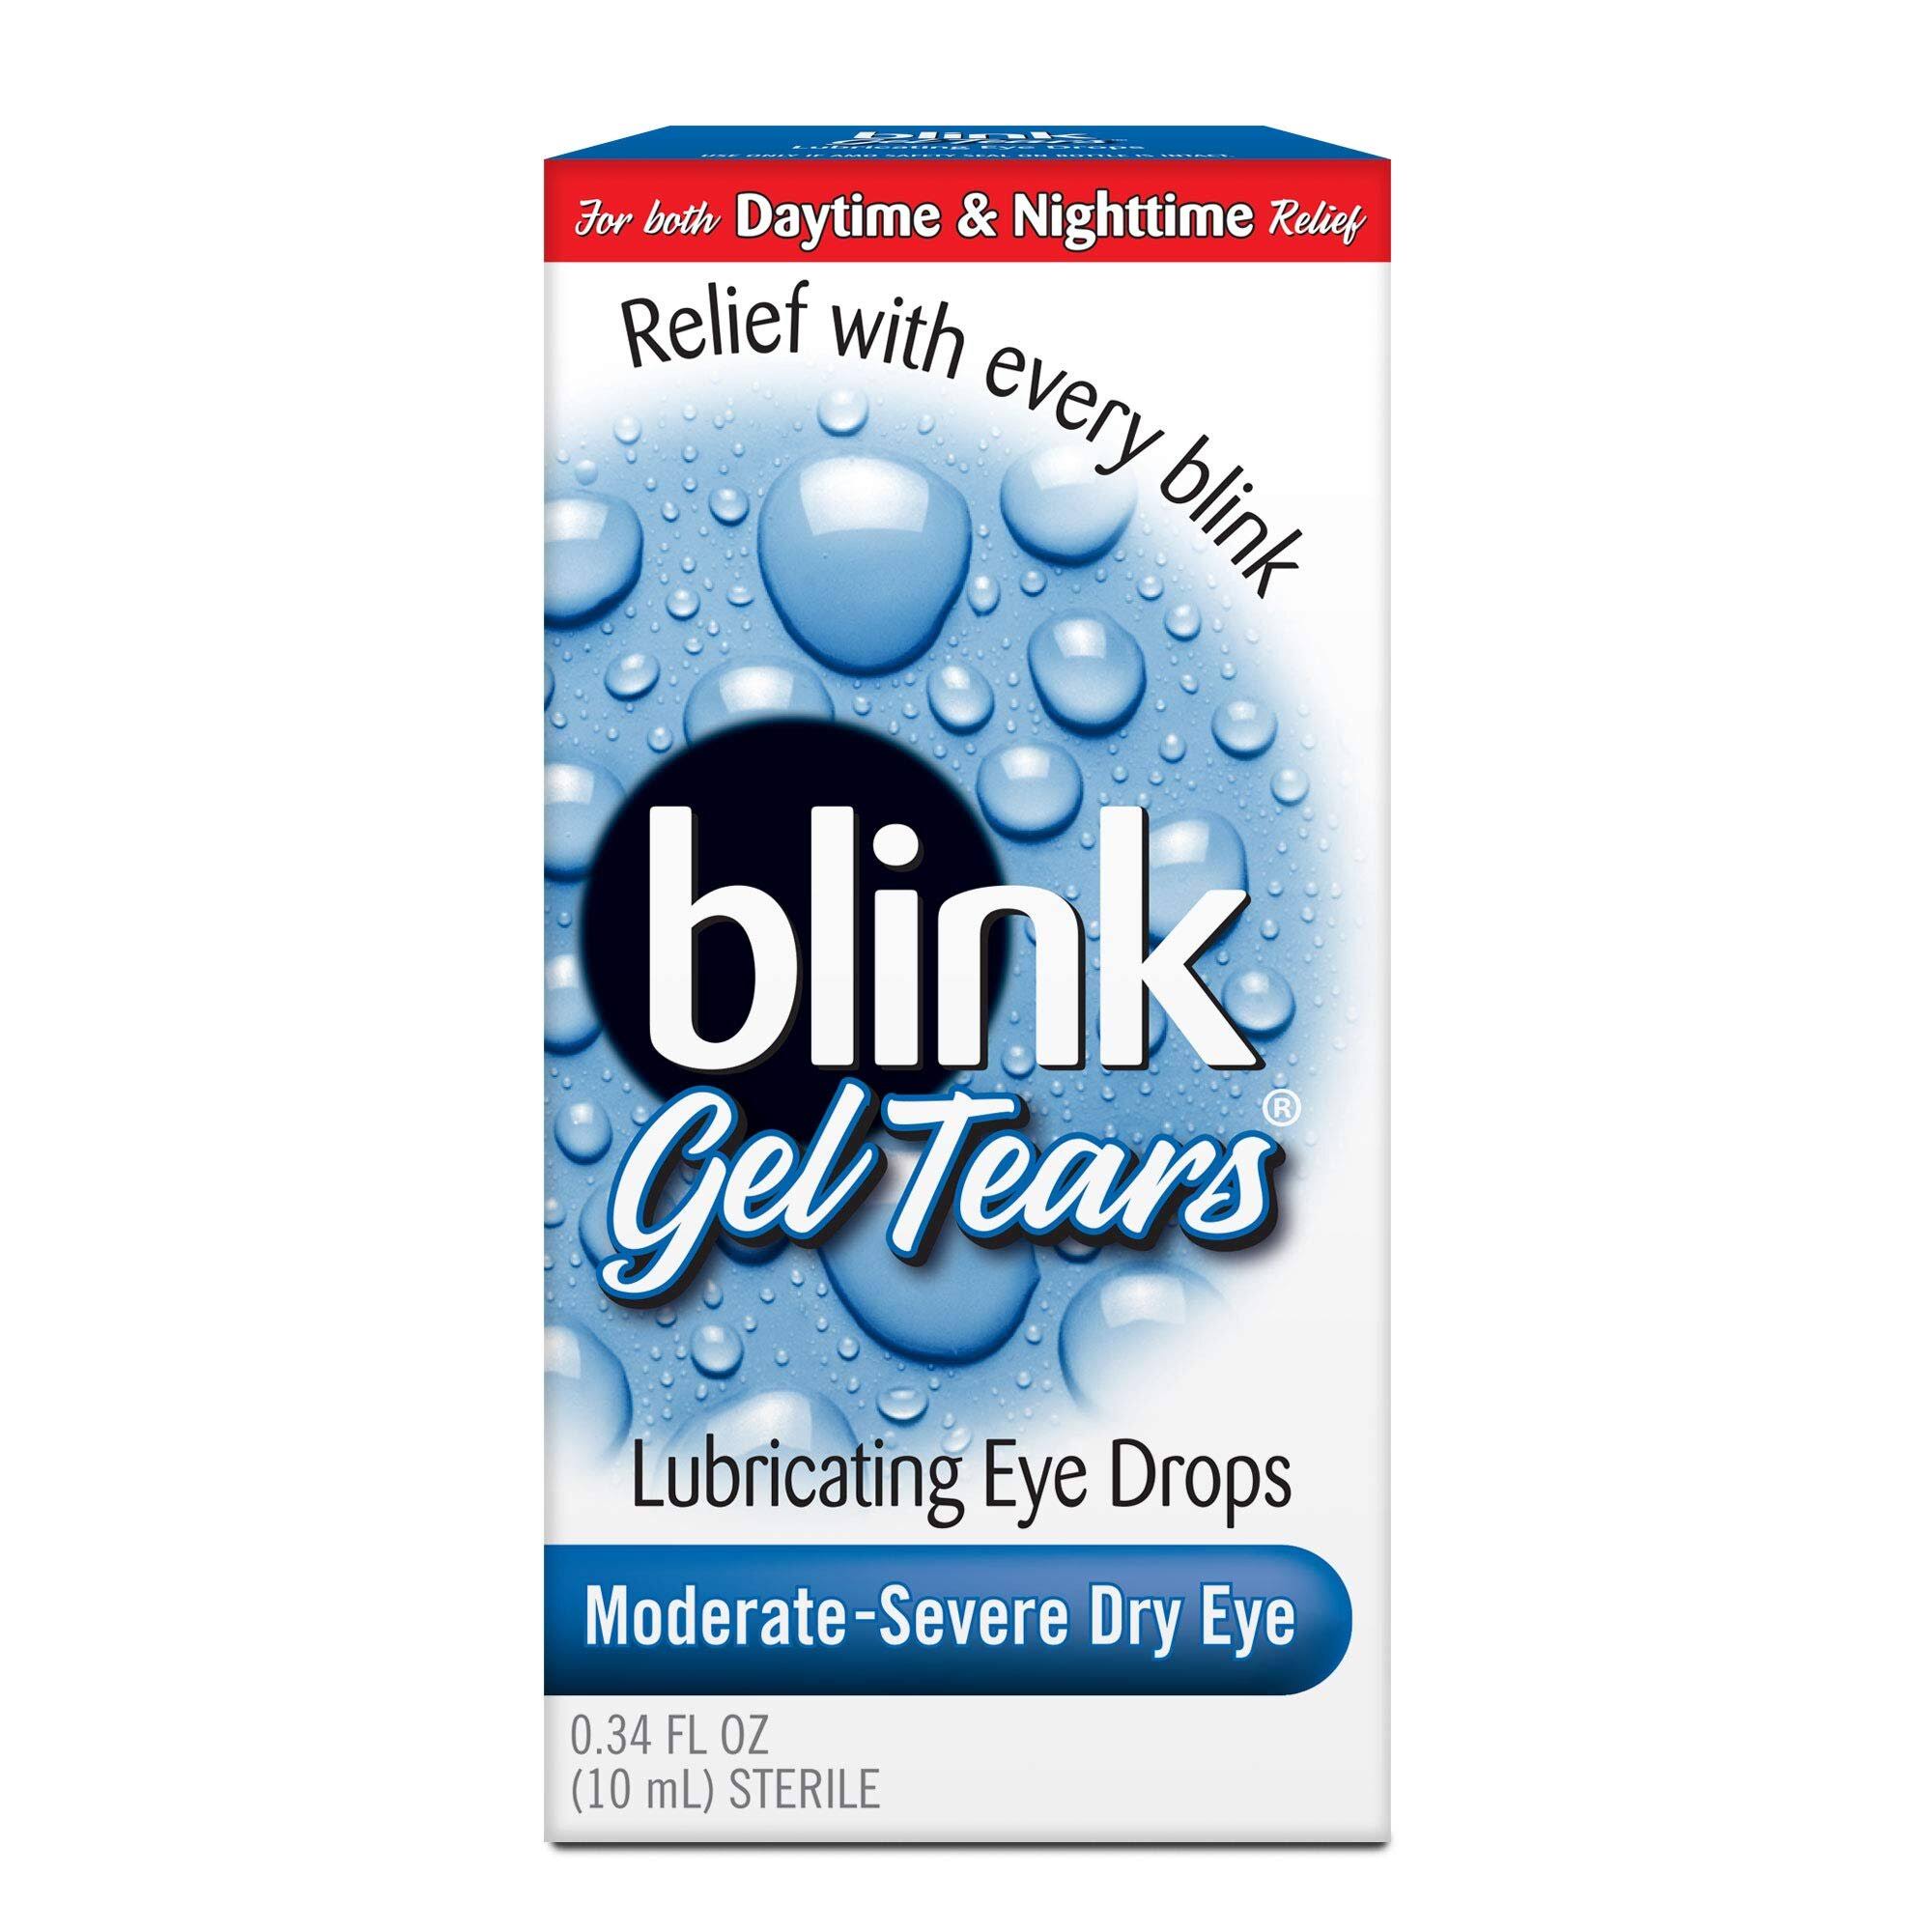 Abbott Blink Gel Tears Lubricating Eye Drops - 10ml